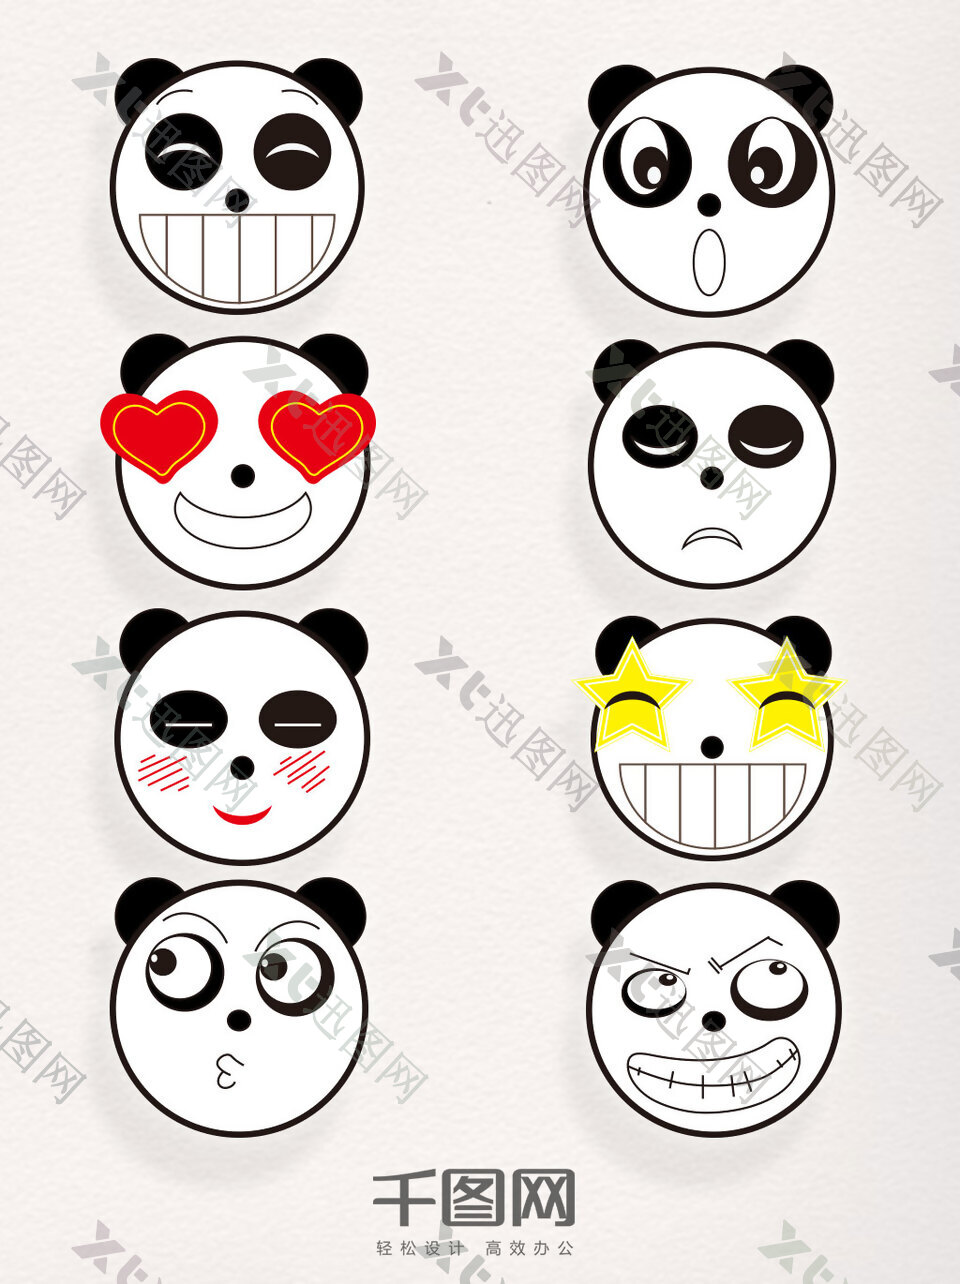 卡通熊猫素材矢量装饰图案表情包元素集合